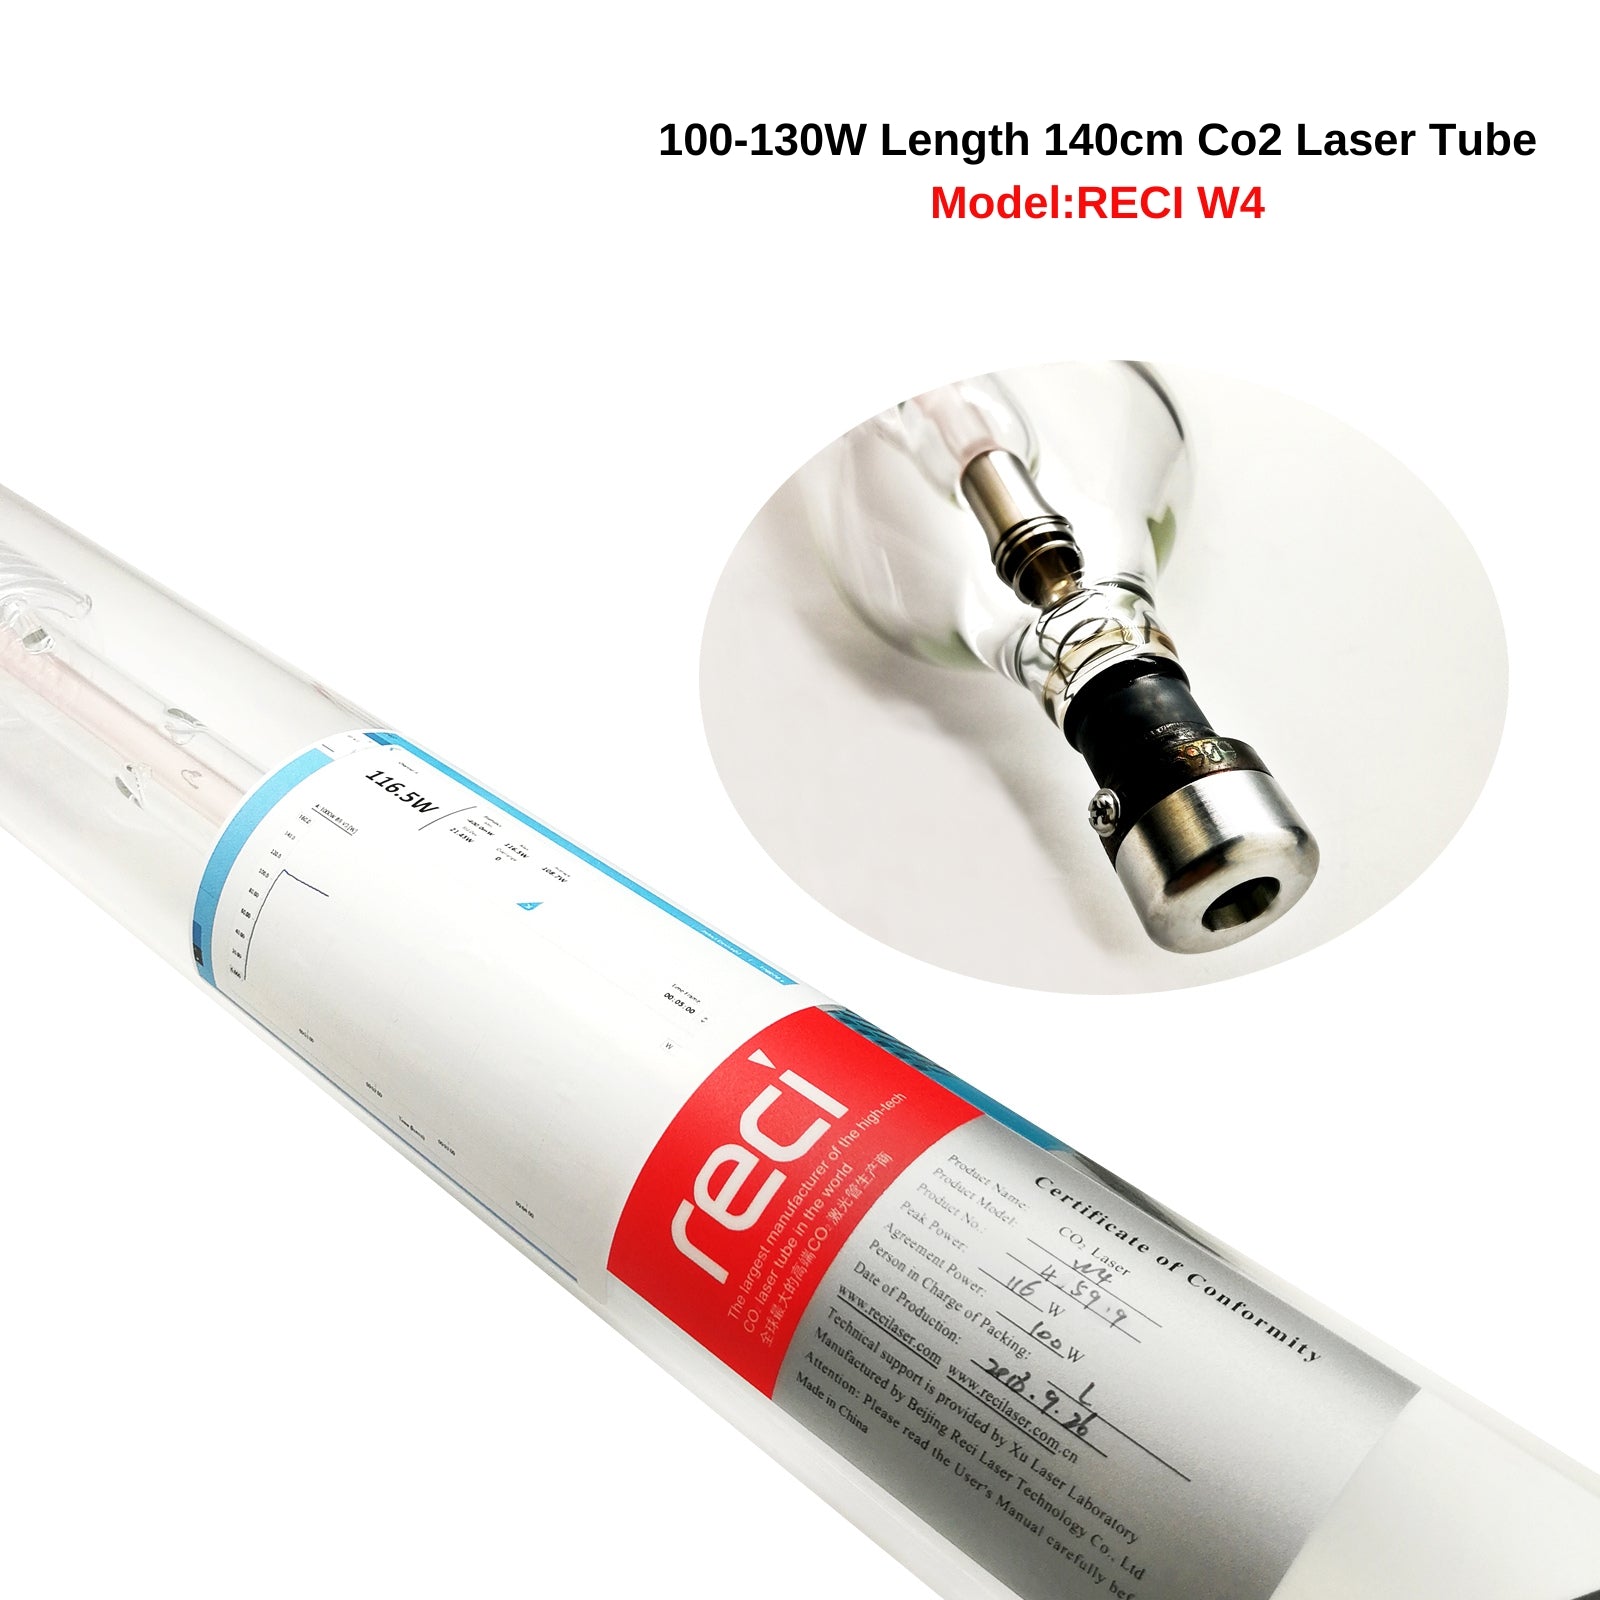 RECI CO2 Laser Tube  W4 100W(Peak 130W) 1400mm Laser Tube + DY20 110V/220V Power Supply